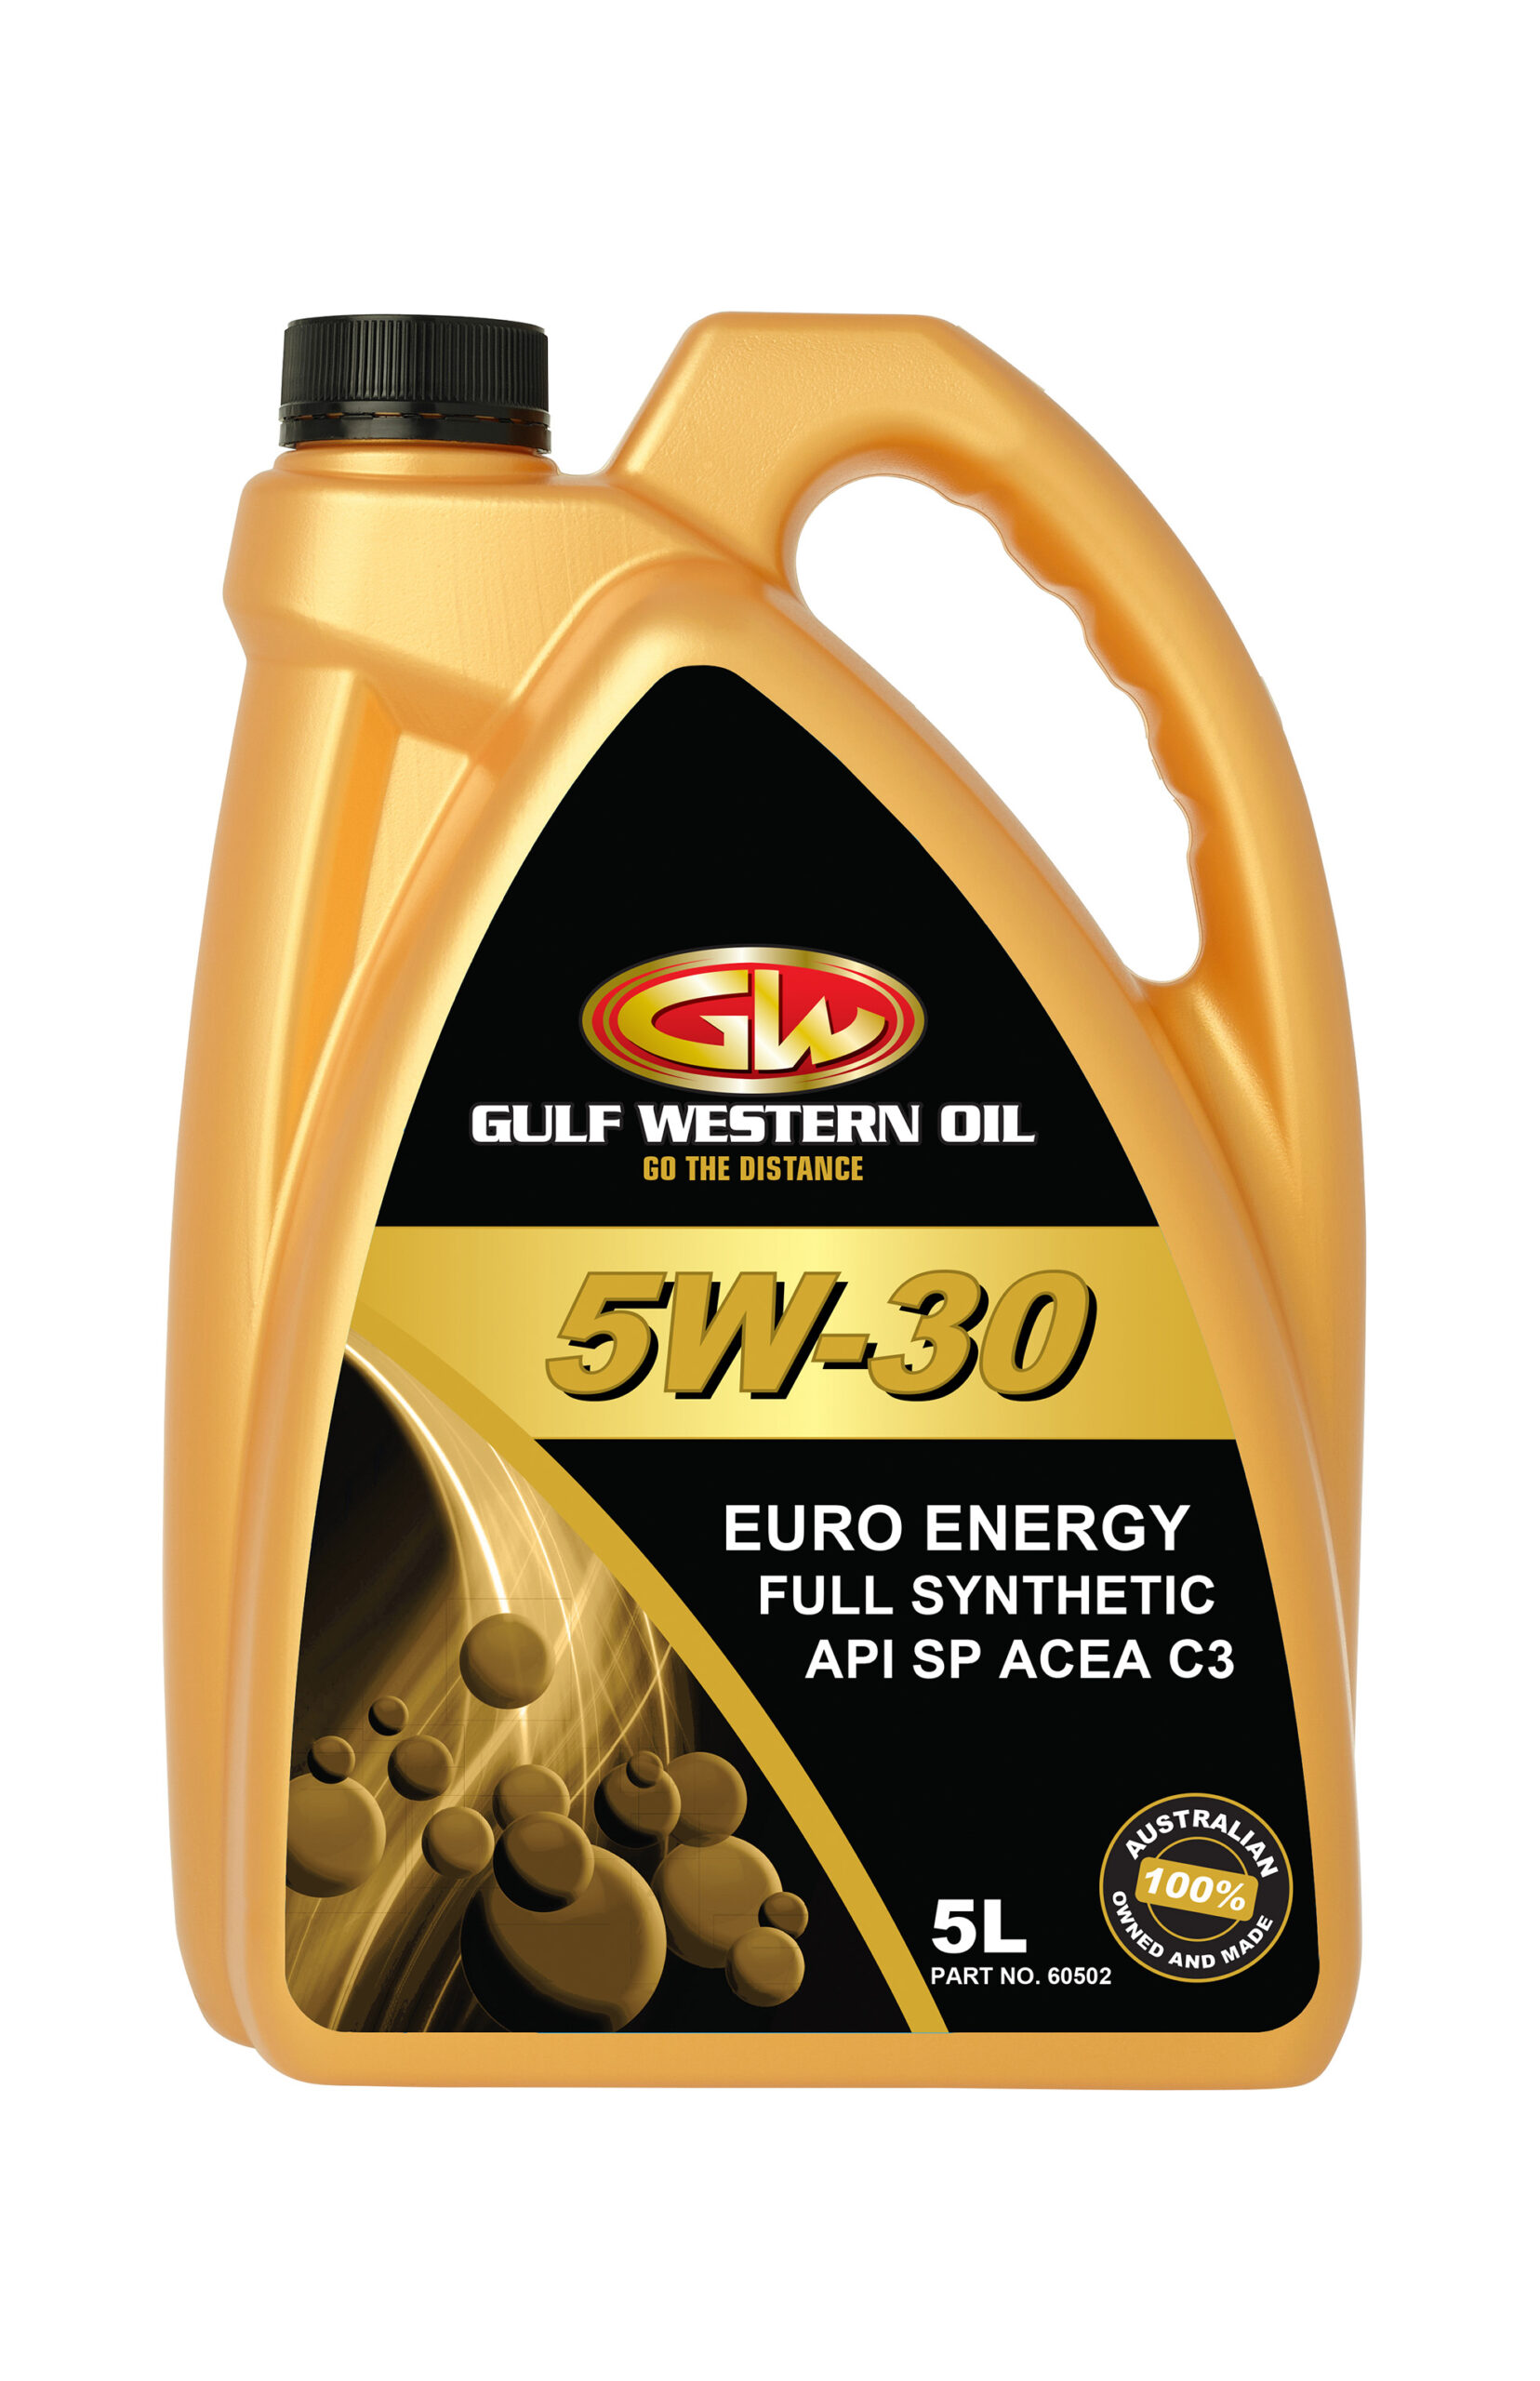 EURO ENERGY 5W-30 - Gulf Western Oil